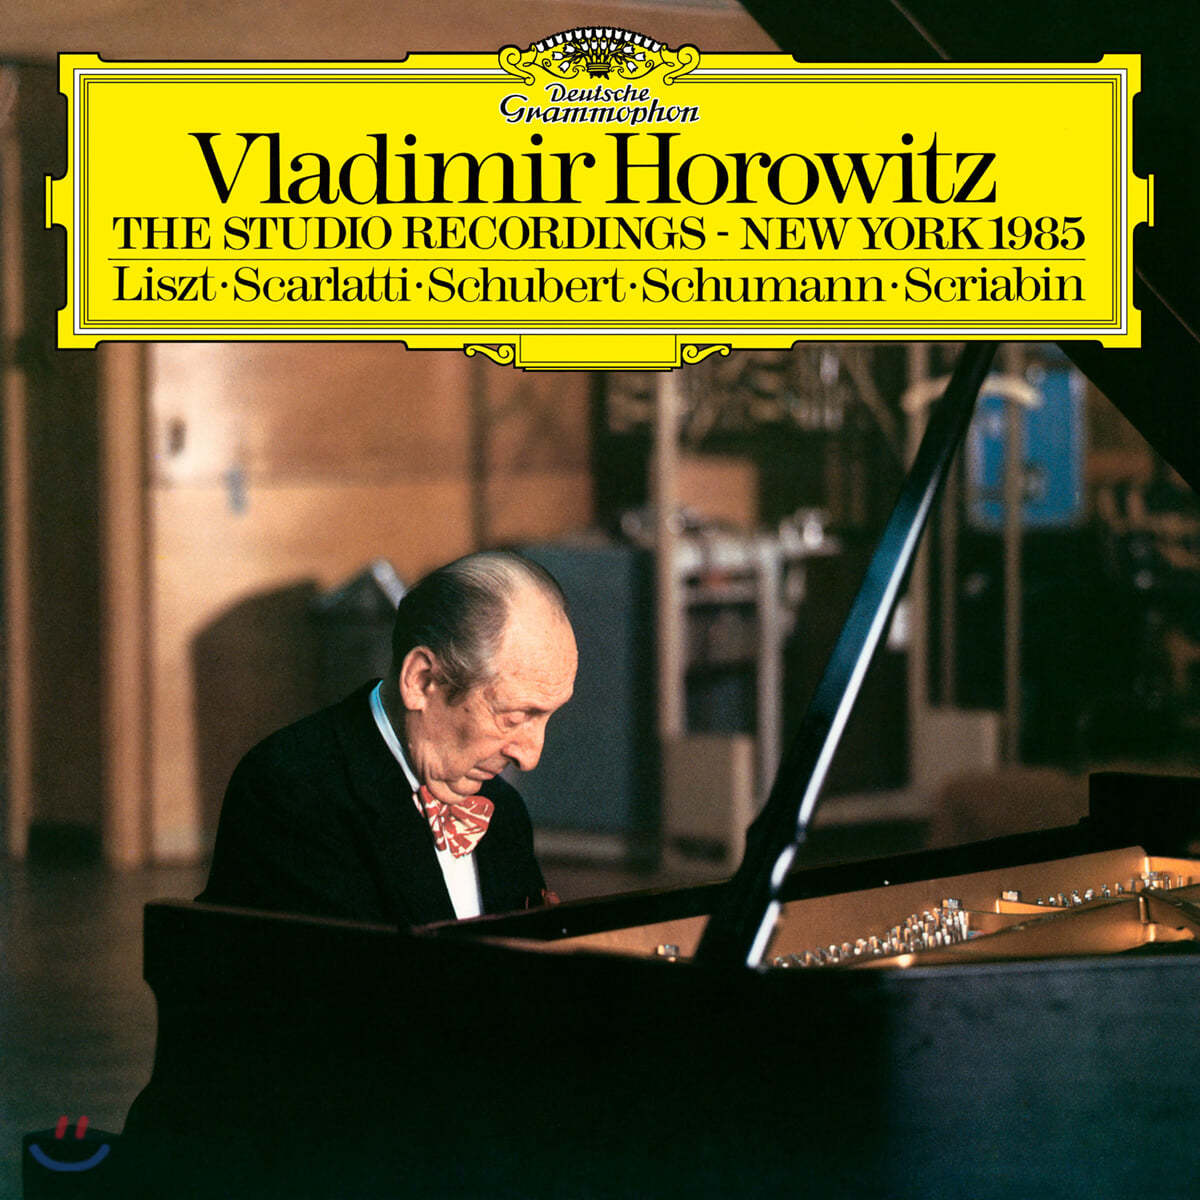 블라디미르 호로비츠 1985년 뉴욕 스튜디오 레코딩 (Vladimir Horowitz - The Studio Recordings, New York 1985) [LP]